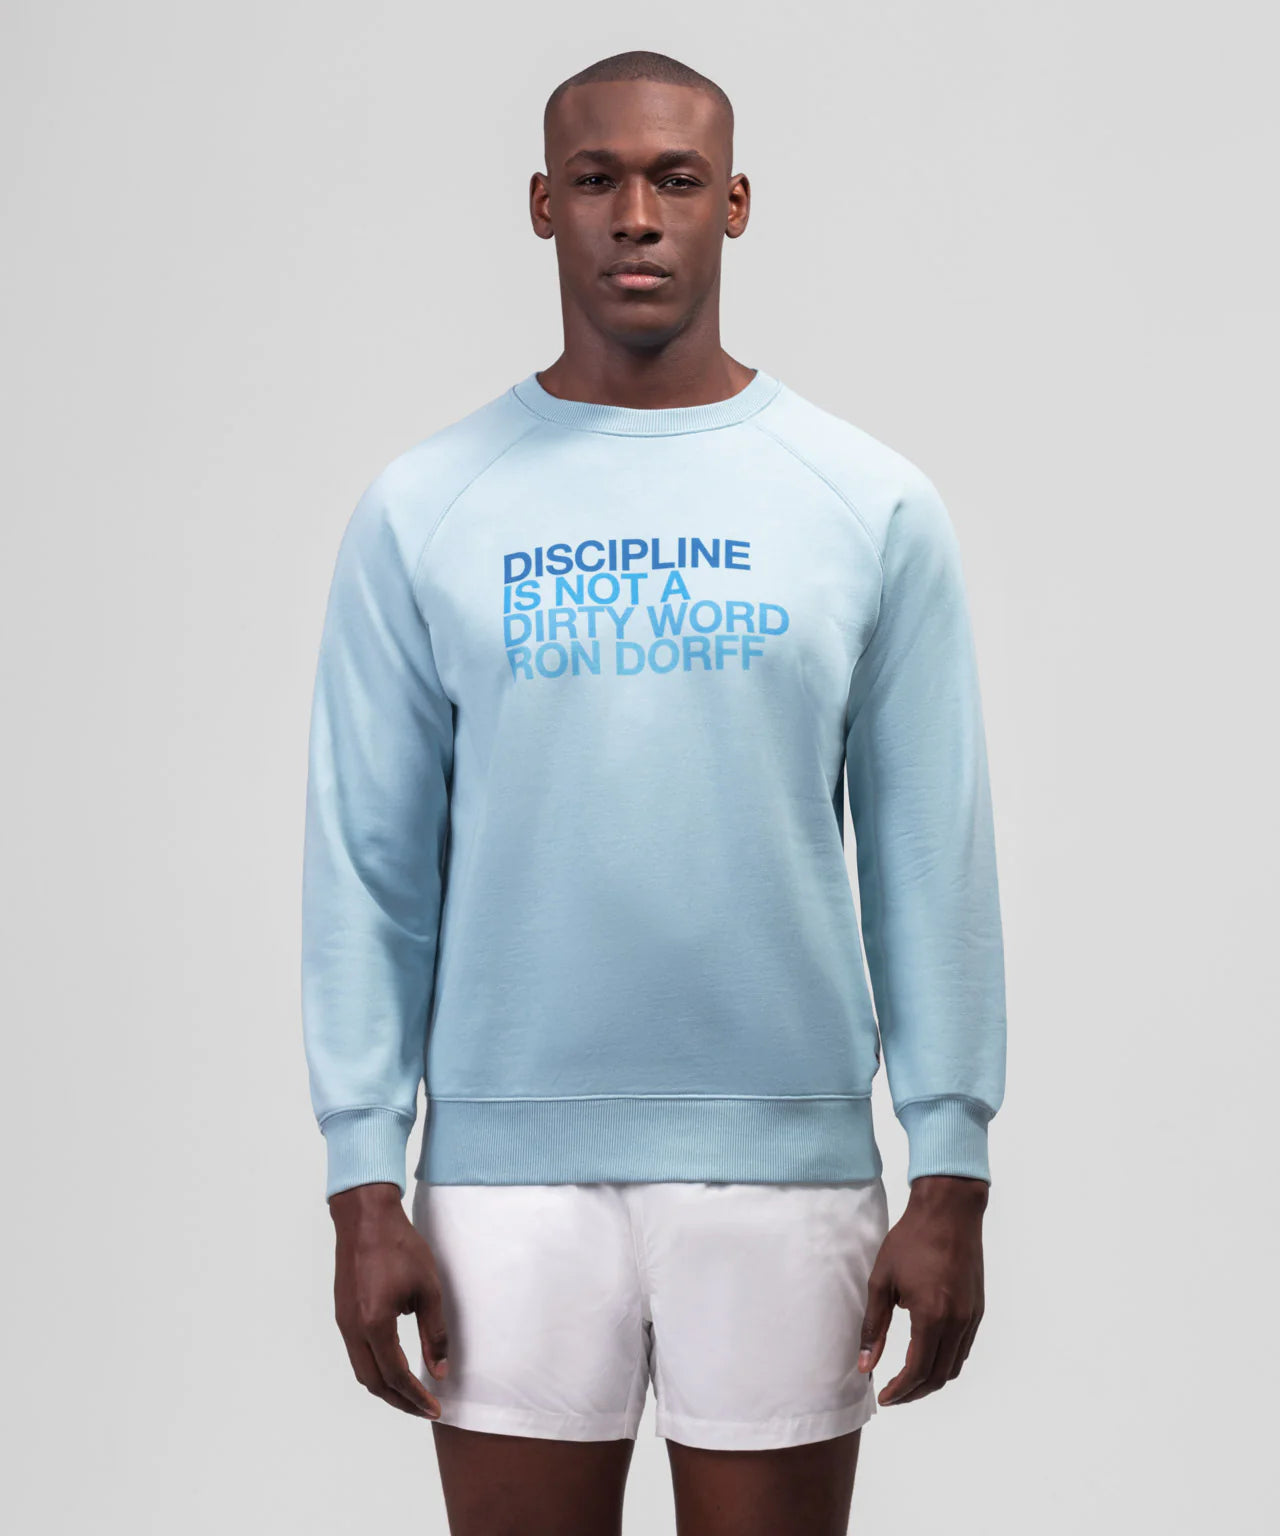 Sweatshirt "DISCIPLINE". Ron Dorff